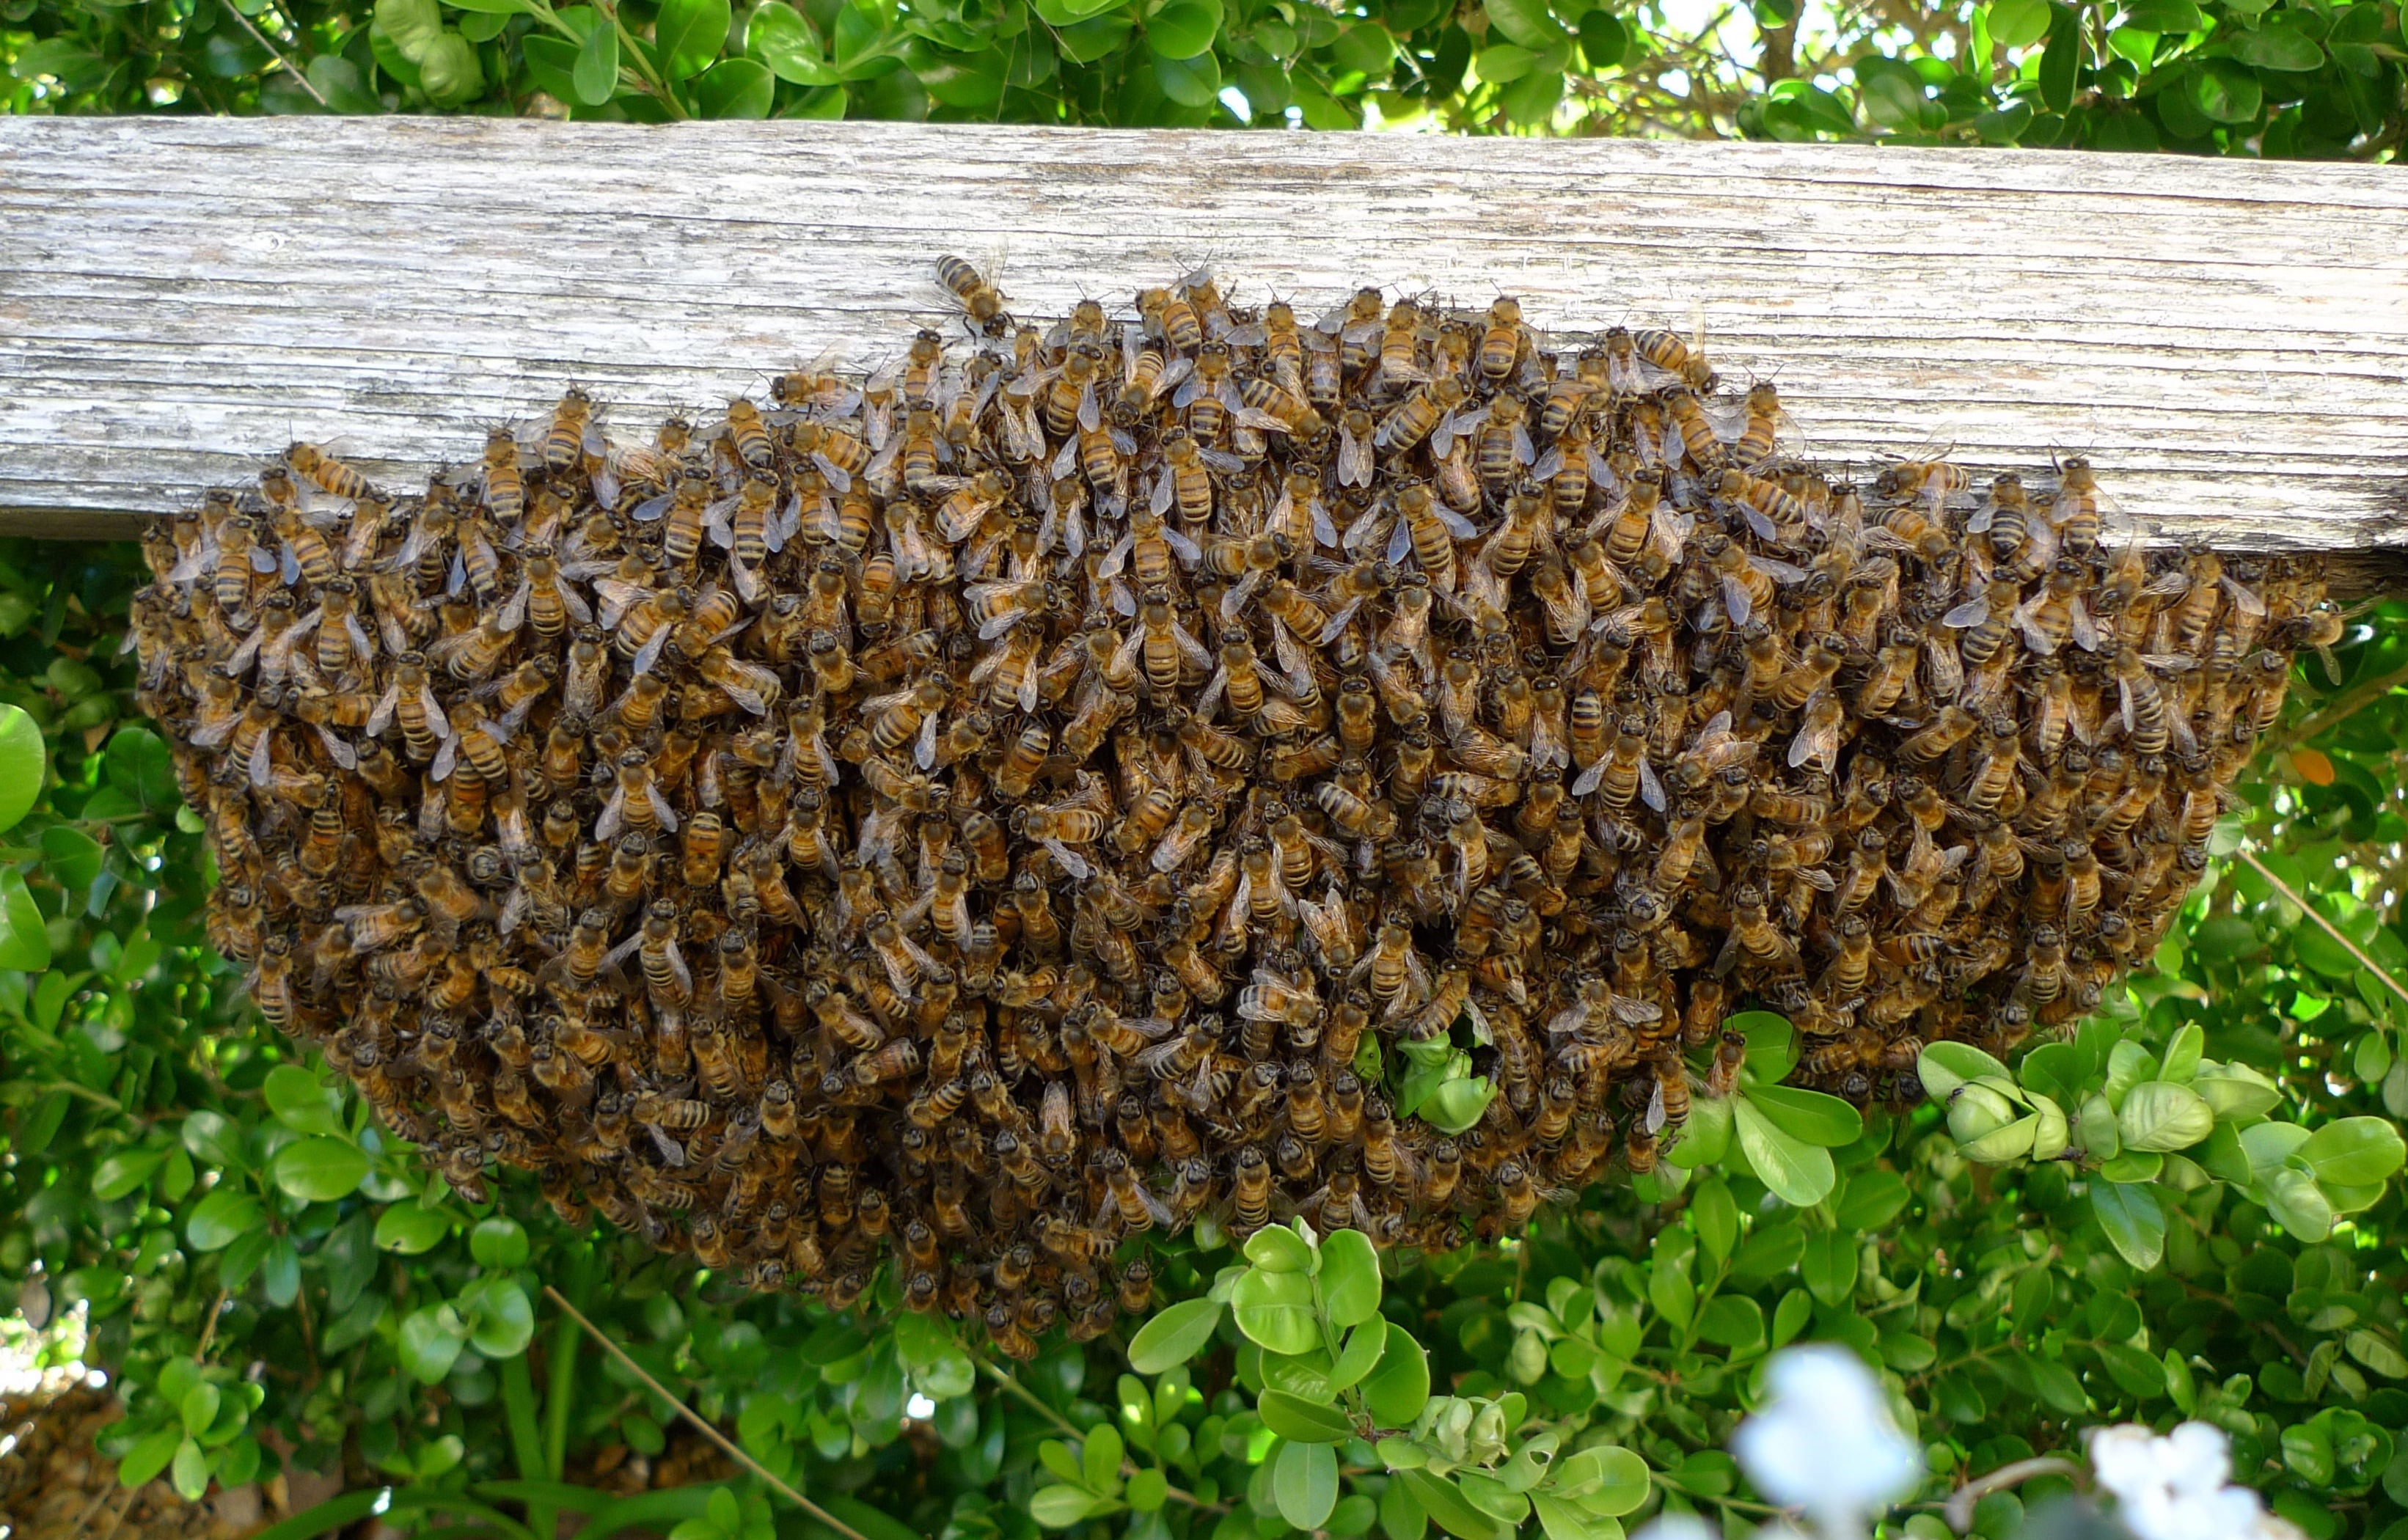 В чем причина меньшей ройности пчел в некоторых ульях и как это объяснить?